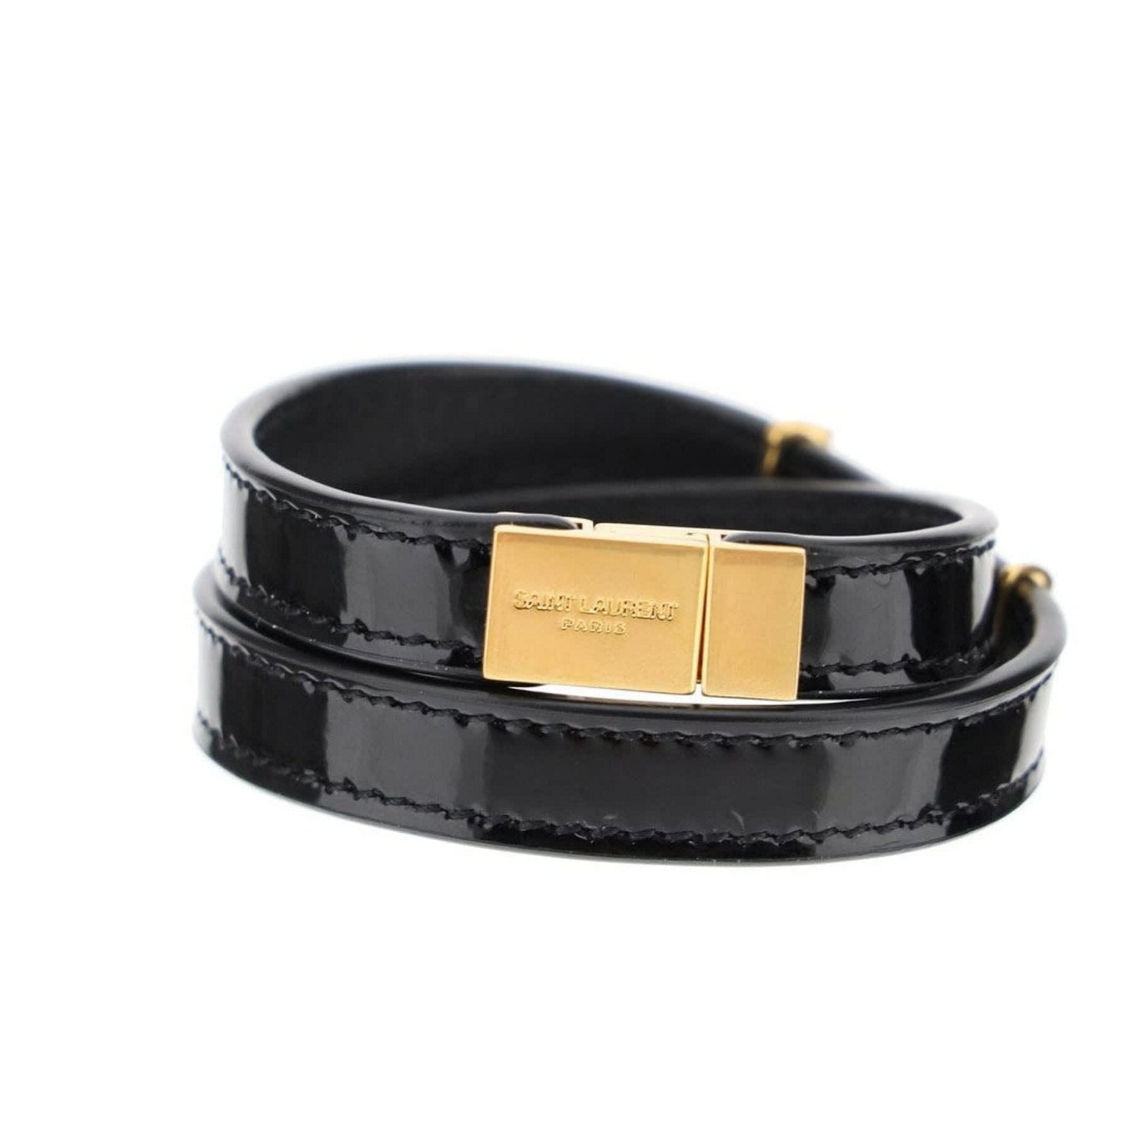 Saint Laurent Opyum Black Patent Leather Double Wrap Bracelet (New) - Image 5 of 5